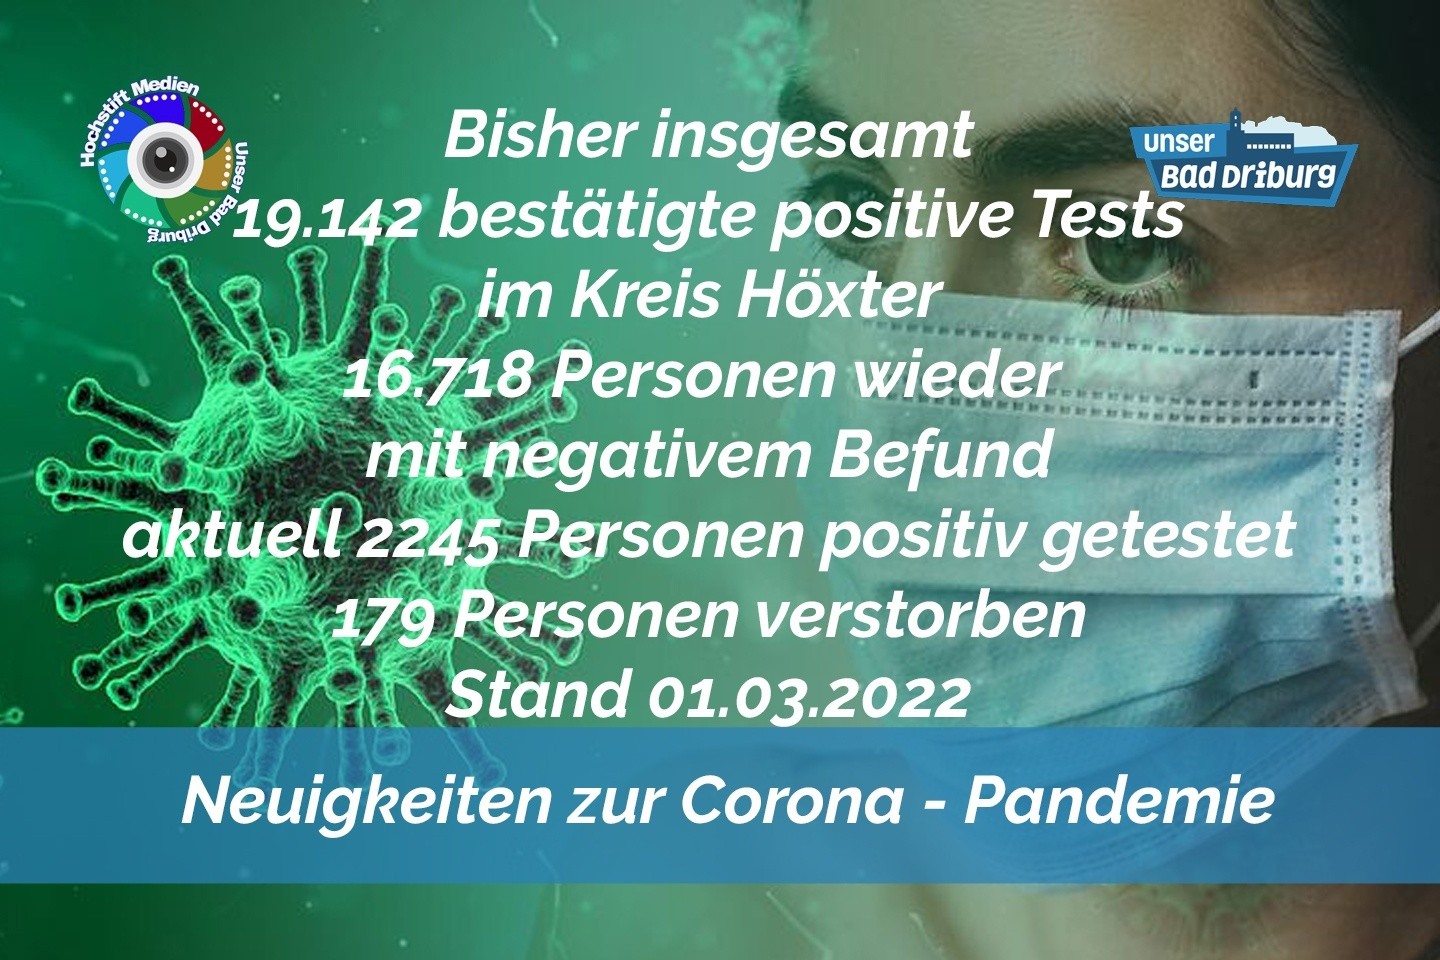 Update 01. März 2022: 275 weitere amtlich positive Tests im Kreis Höxter